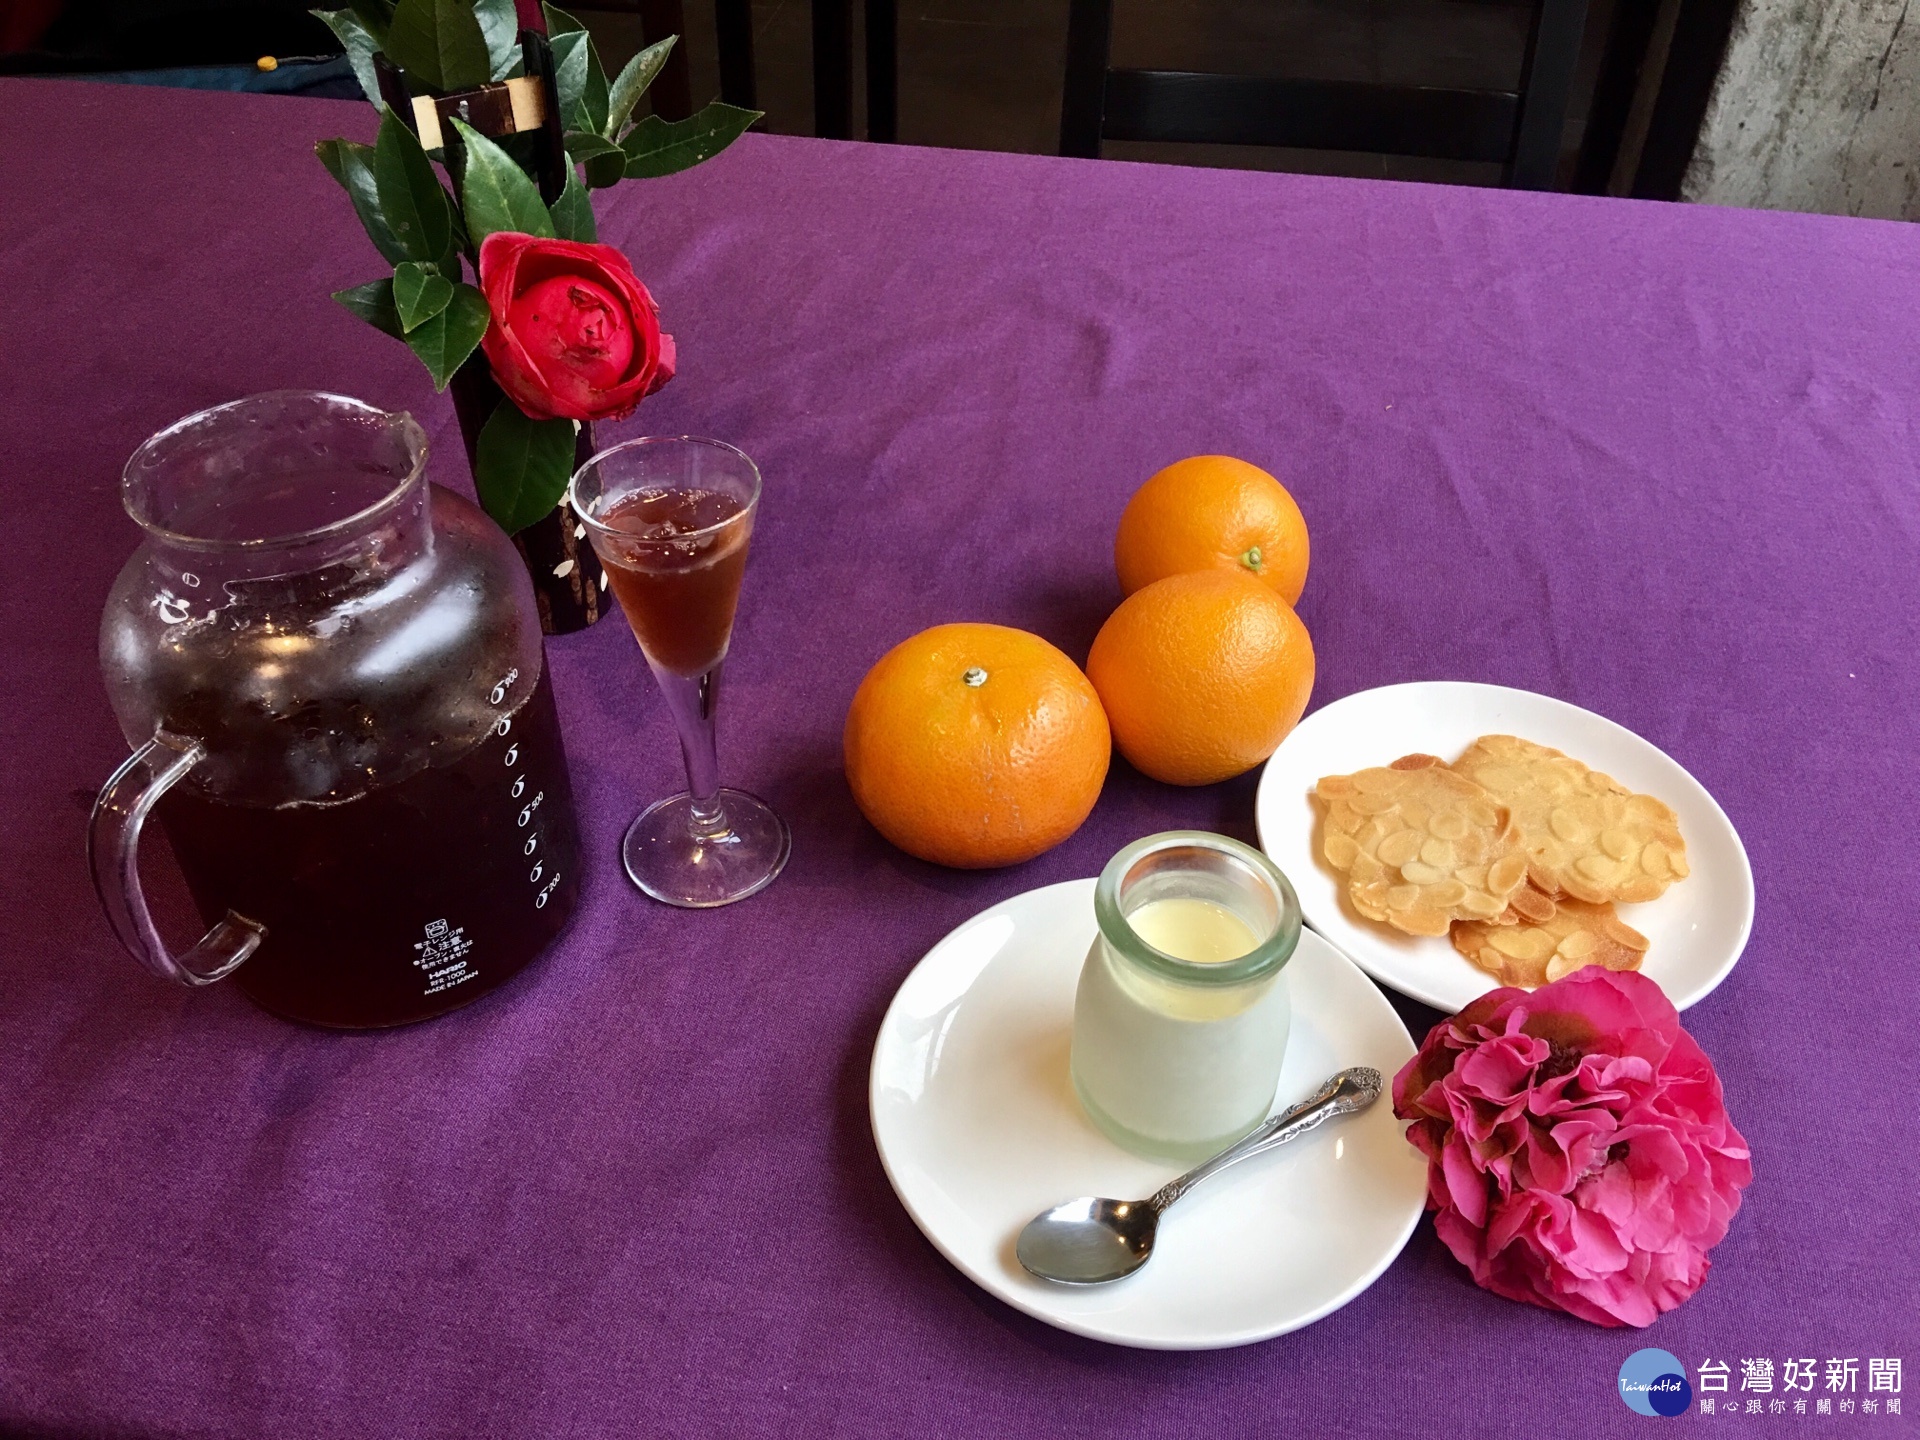 迎賓茶點的飲料用的是自家花園裡的櫻果跟梅子釀的醋，爽口而沒負擔。